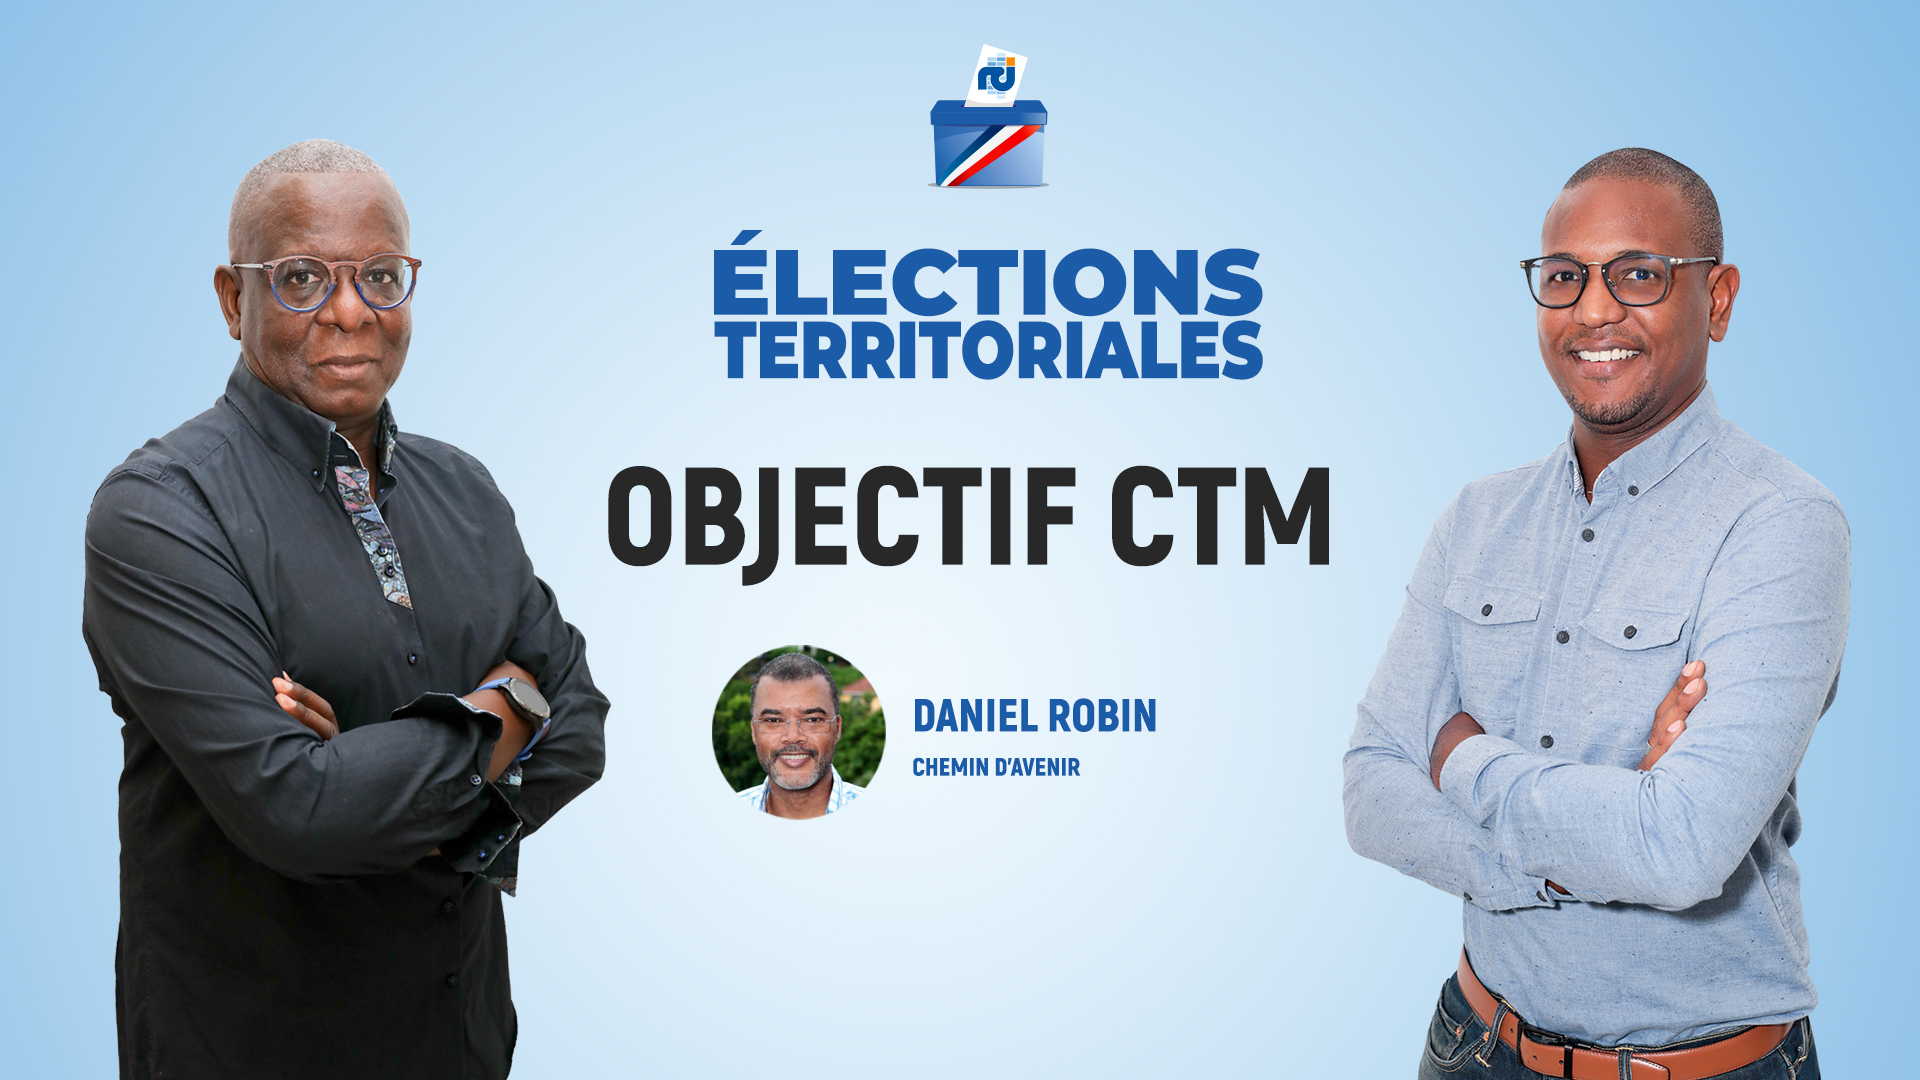     Daniel Robin est l'invité d'Objectif CTM, l'émission politique de RCI

